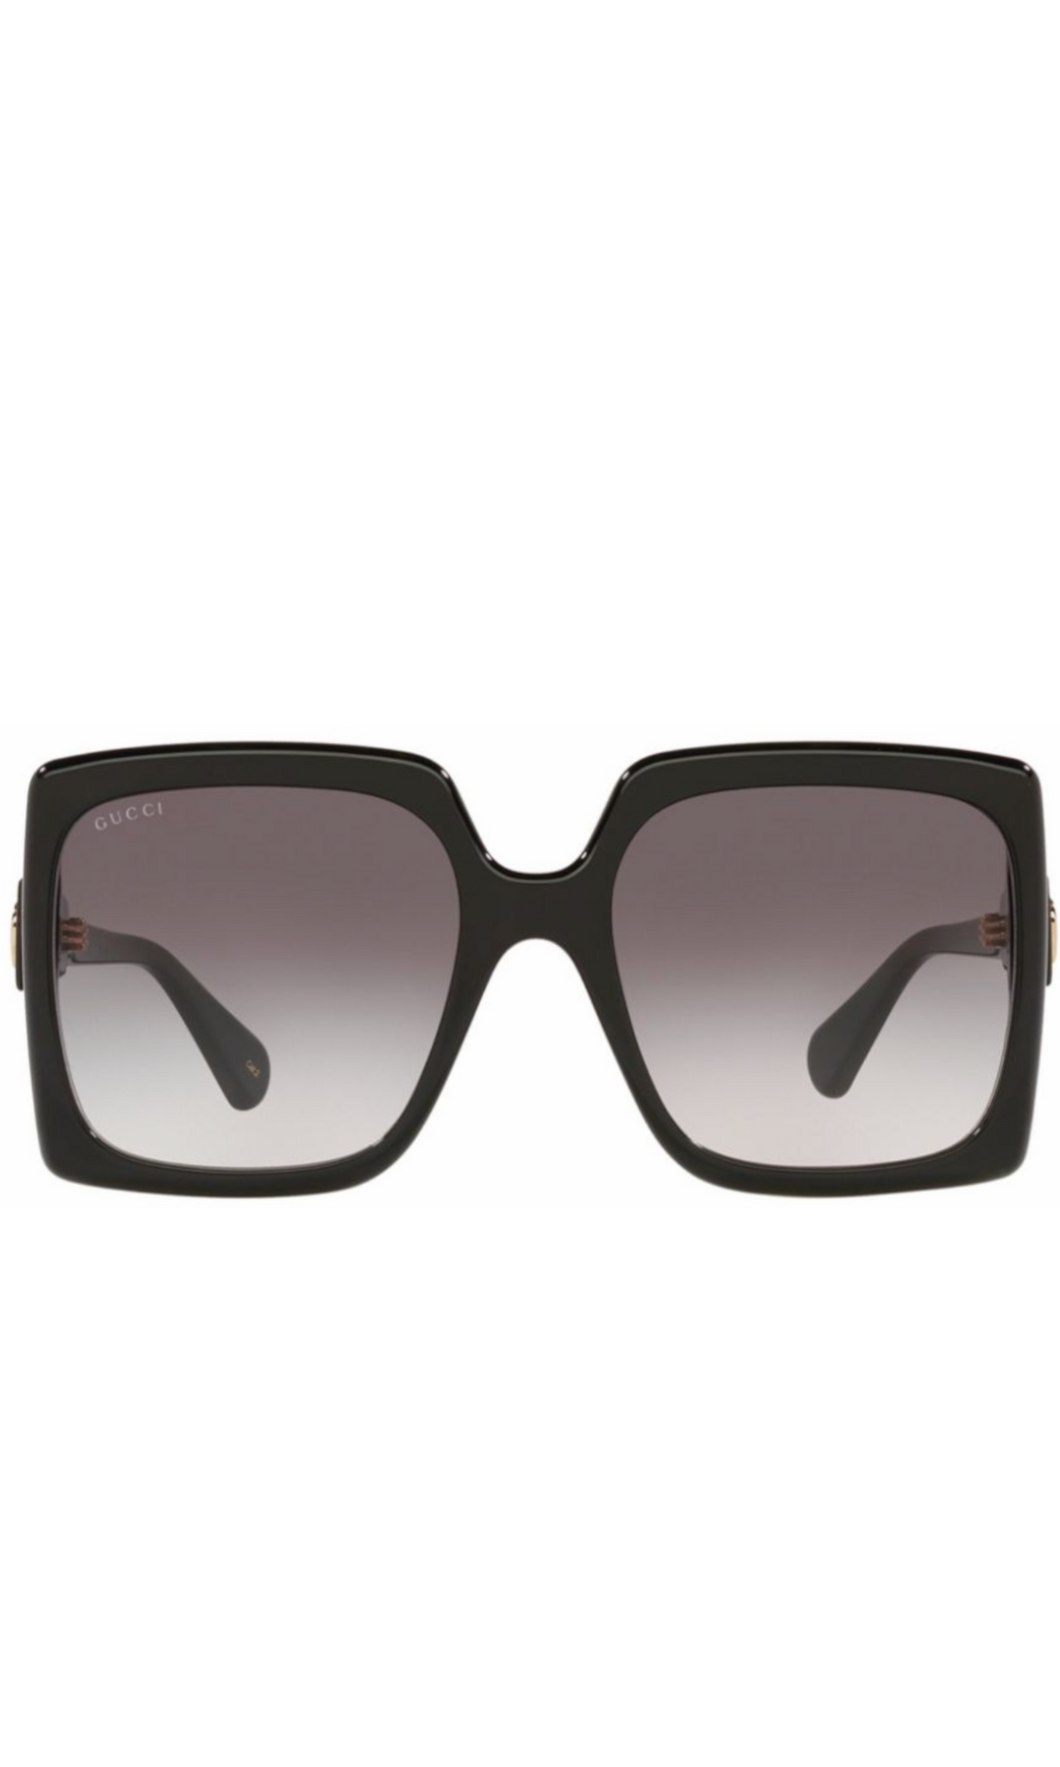 GUCCI | Square Frame Sunglasses